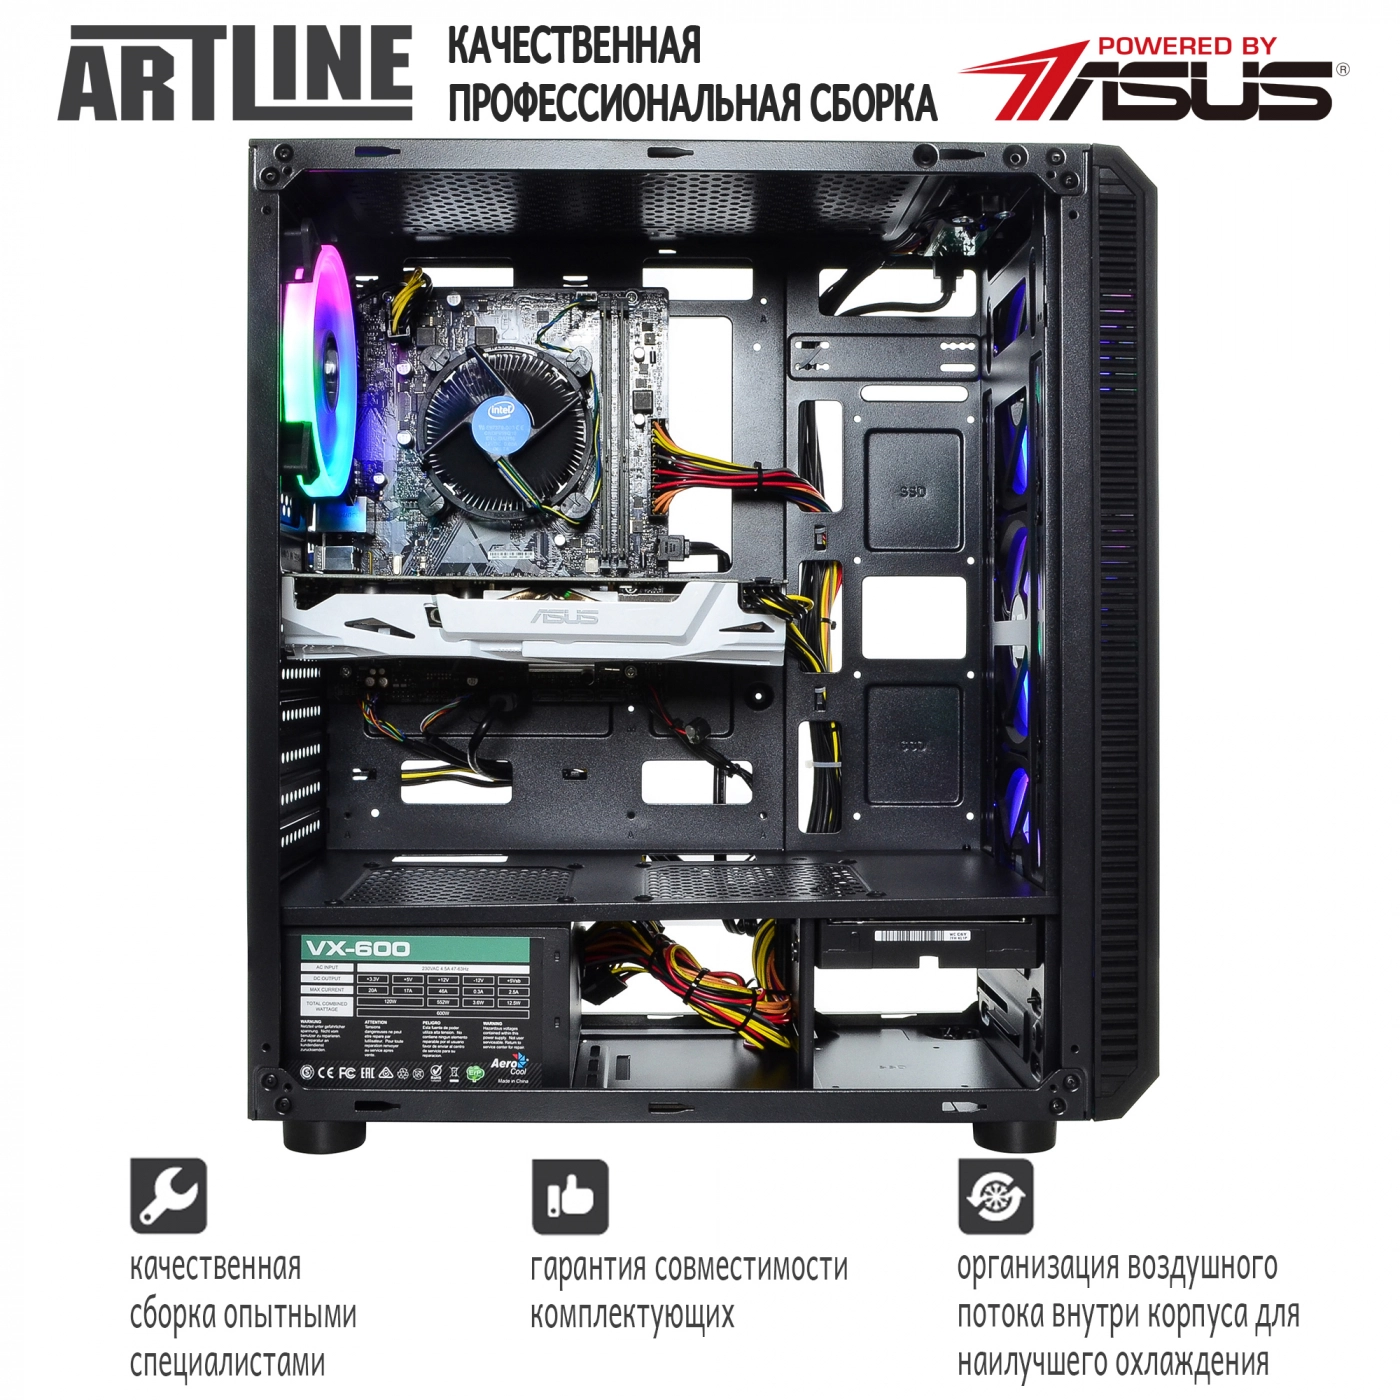 Купить Компьютер ARTLINE Gaming X43v05 - фото 3